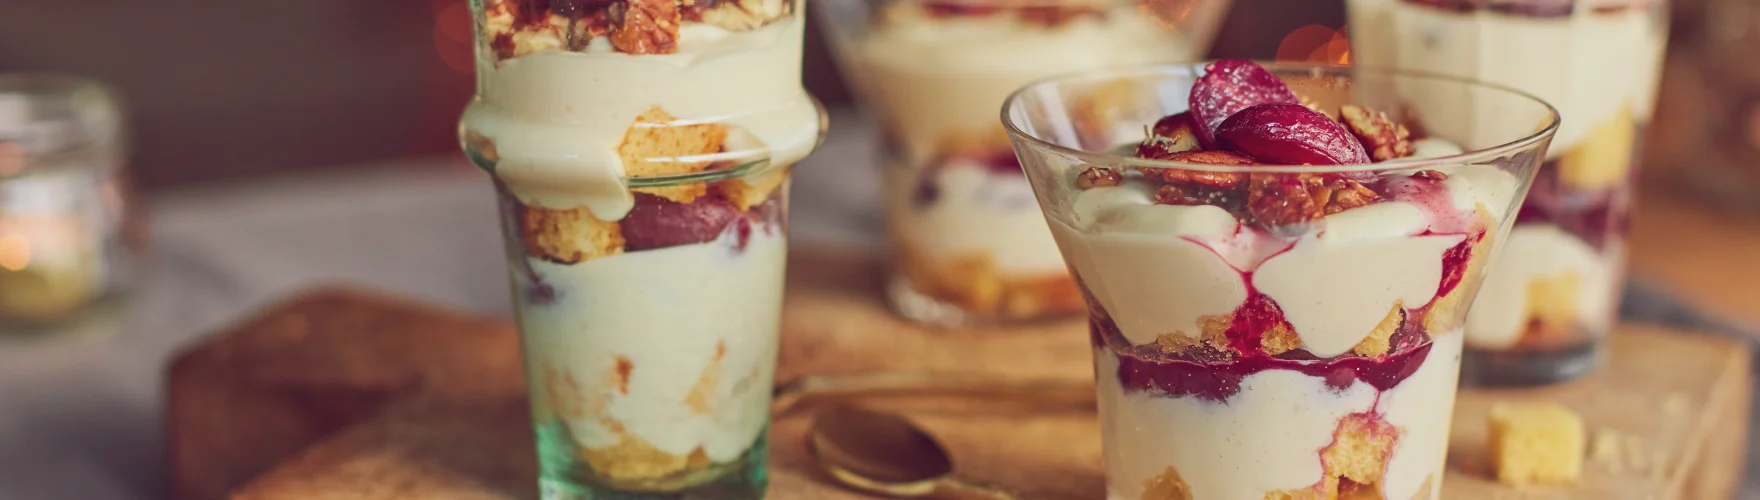 Romige trifle met druiven, pecannoten en een room van brie